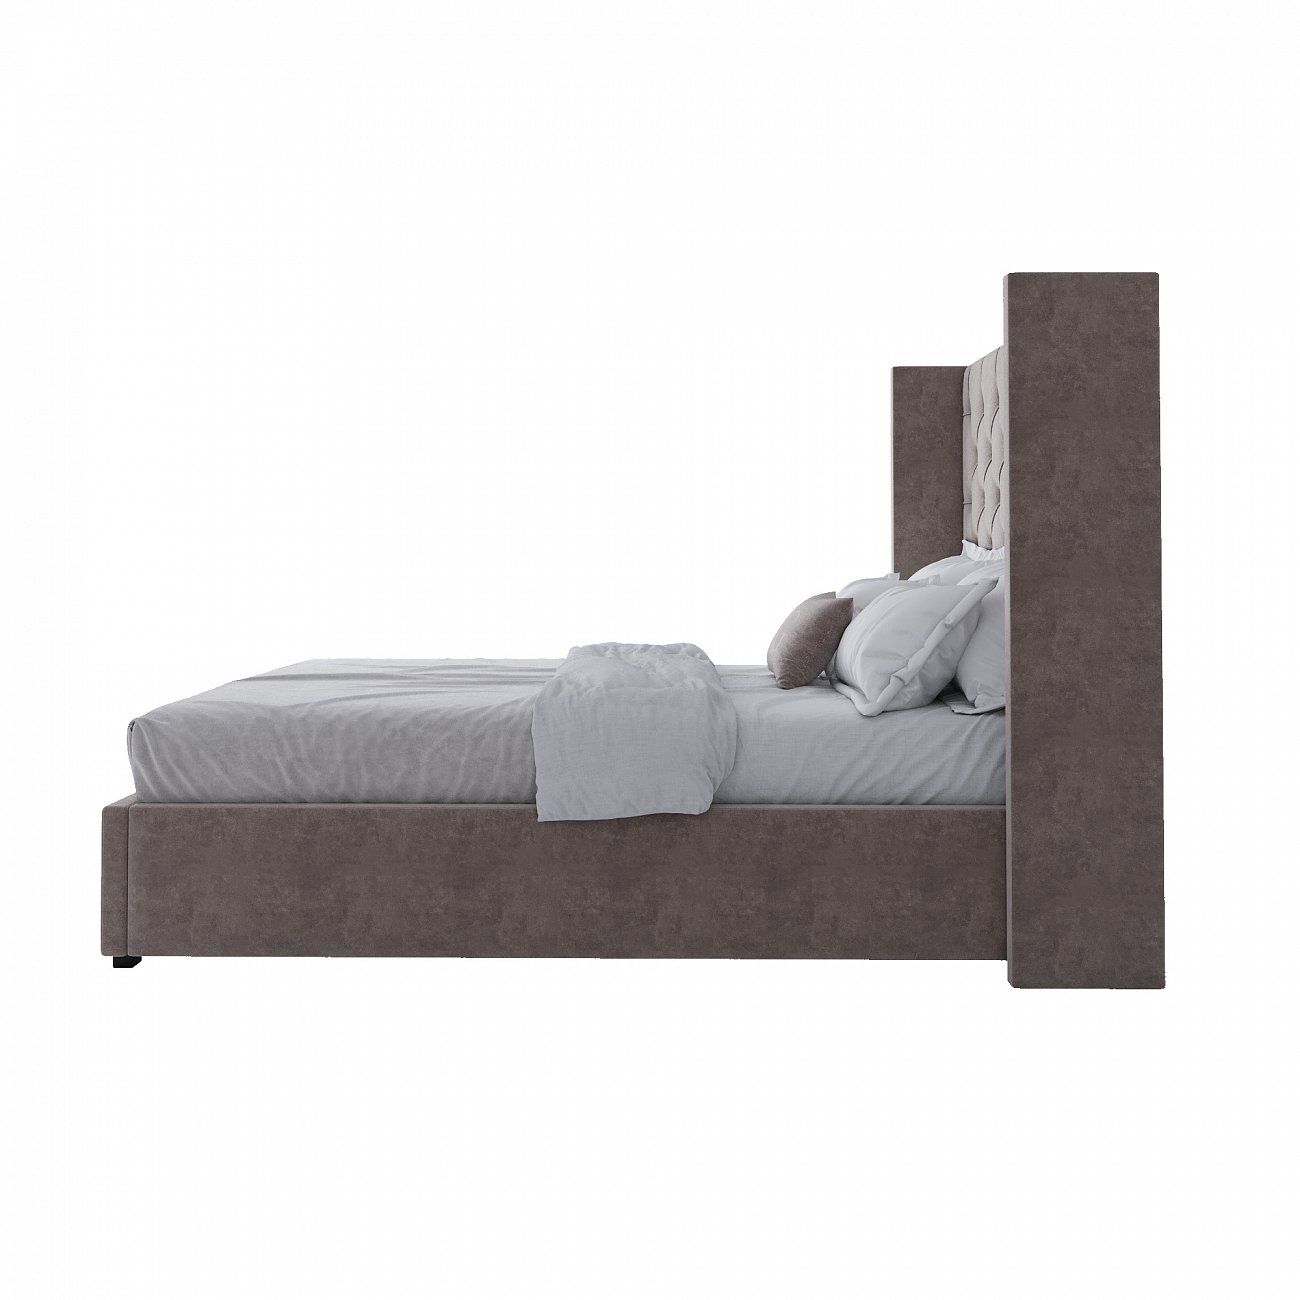 Кровать подростковая 140х200 см серо-коричневая с каретной стяжкой без гвоздиков Wing-2